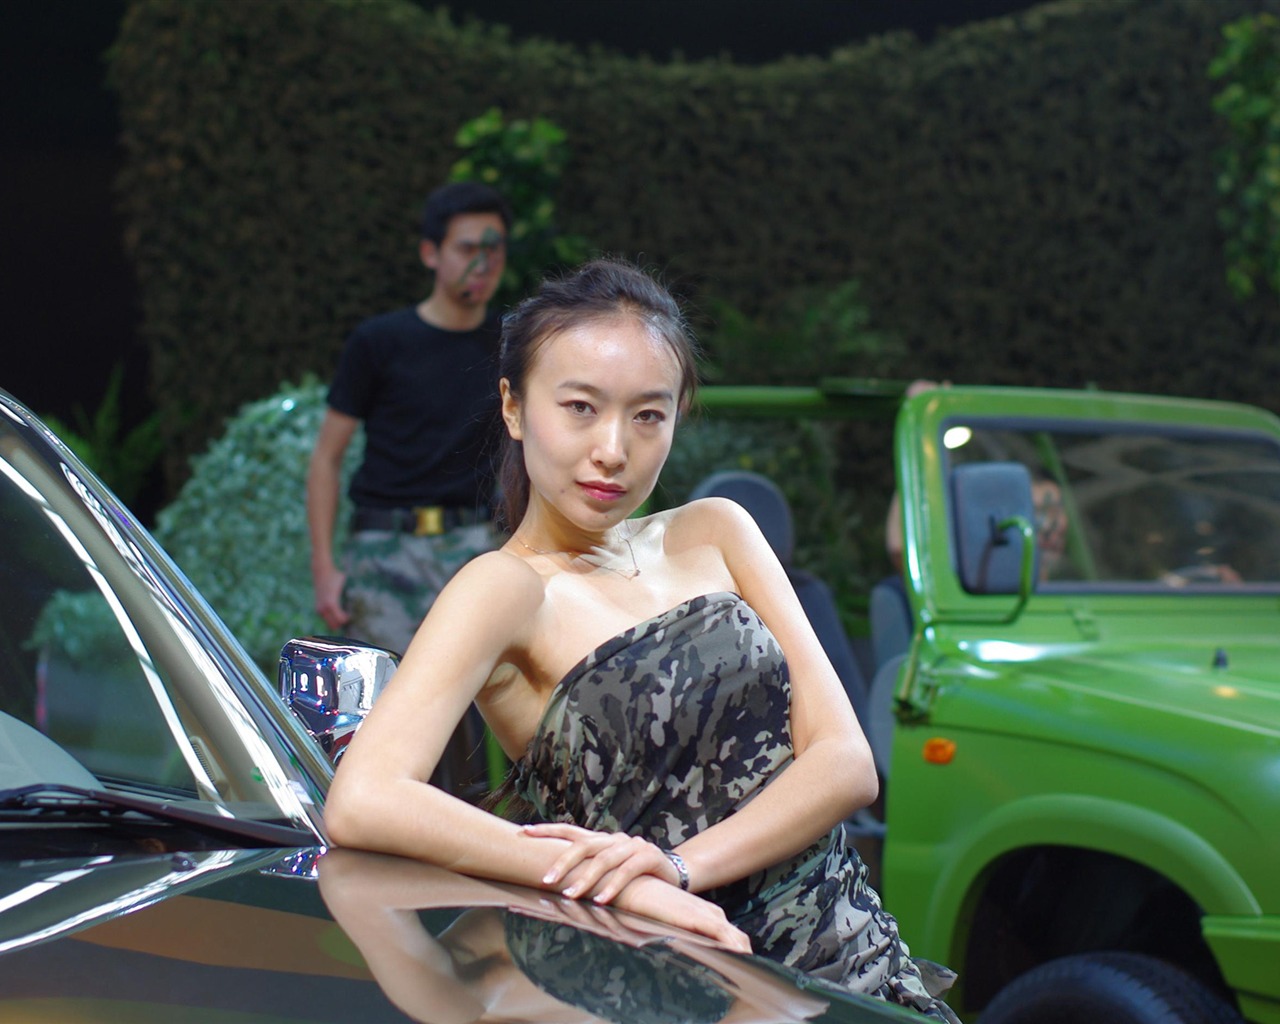 Beijing 2010 Salon de l'auto de beauté (michael68 œuvres) #14 - 1280x1024